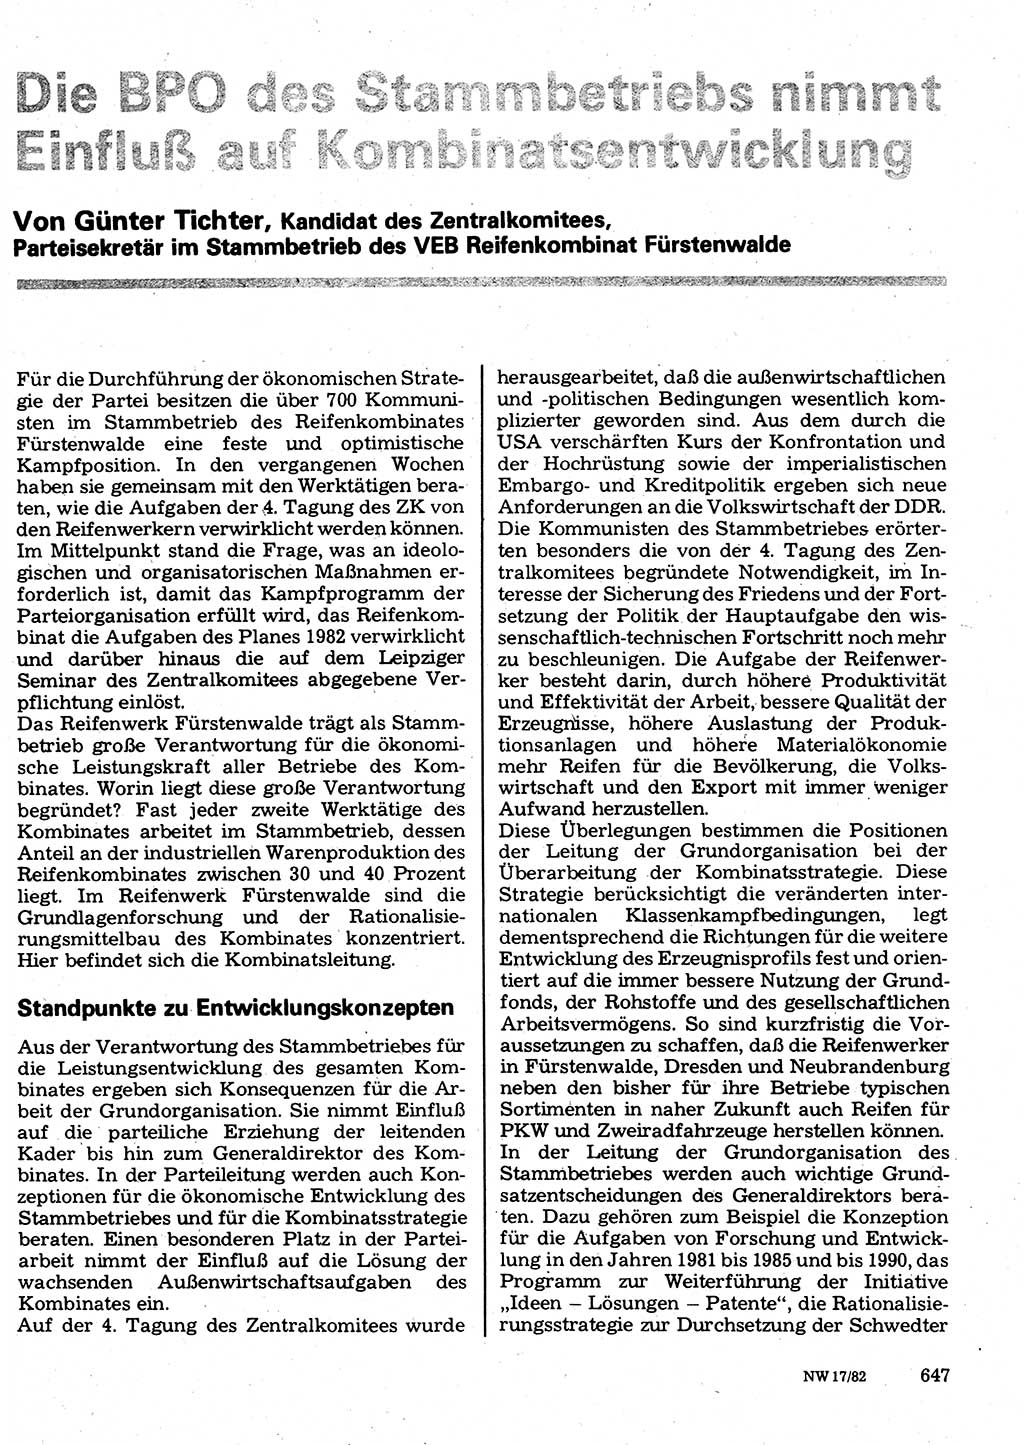 Neuer Weg (NW), Organ des Zentralkomitees (ZK) der SED (Sozialistische Einheitspartei Deutschlands) für Fragen des Parteilebens, 37. Jahrgang [Deutsche Demokratische Republik (DDR)] 1982, Seite 647 (NW ZK SED DDR 1982, S. 647)